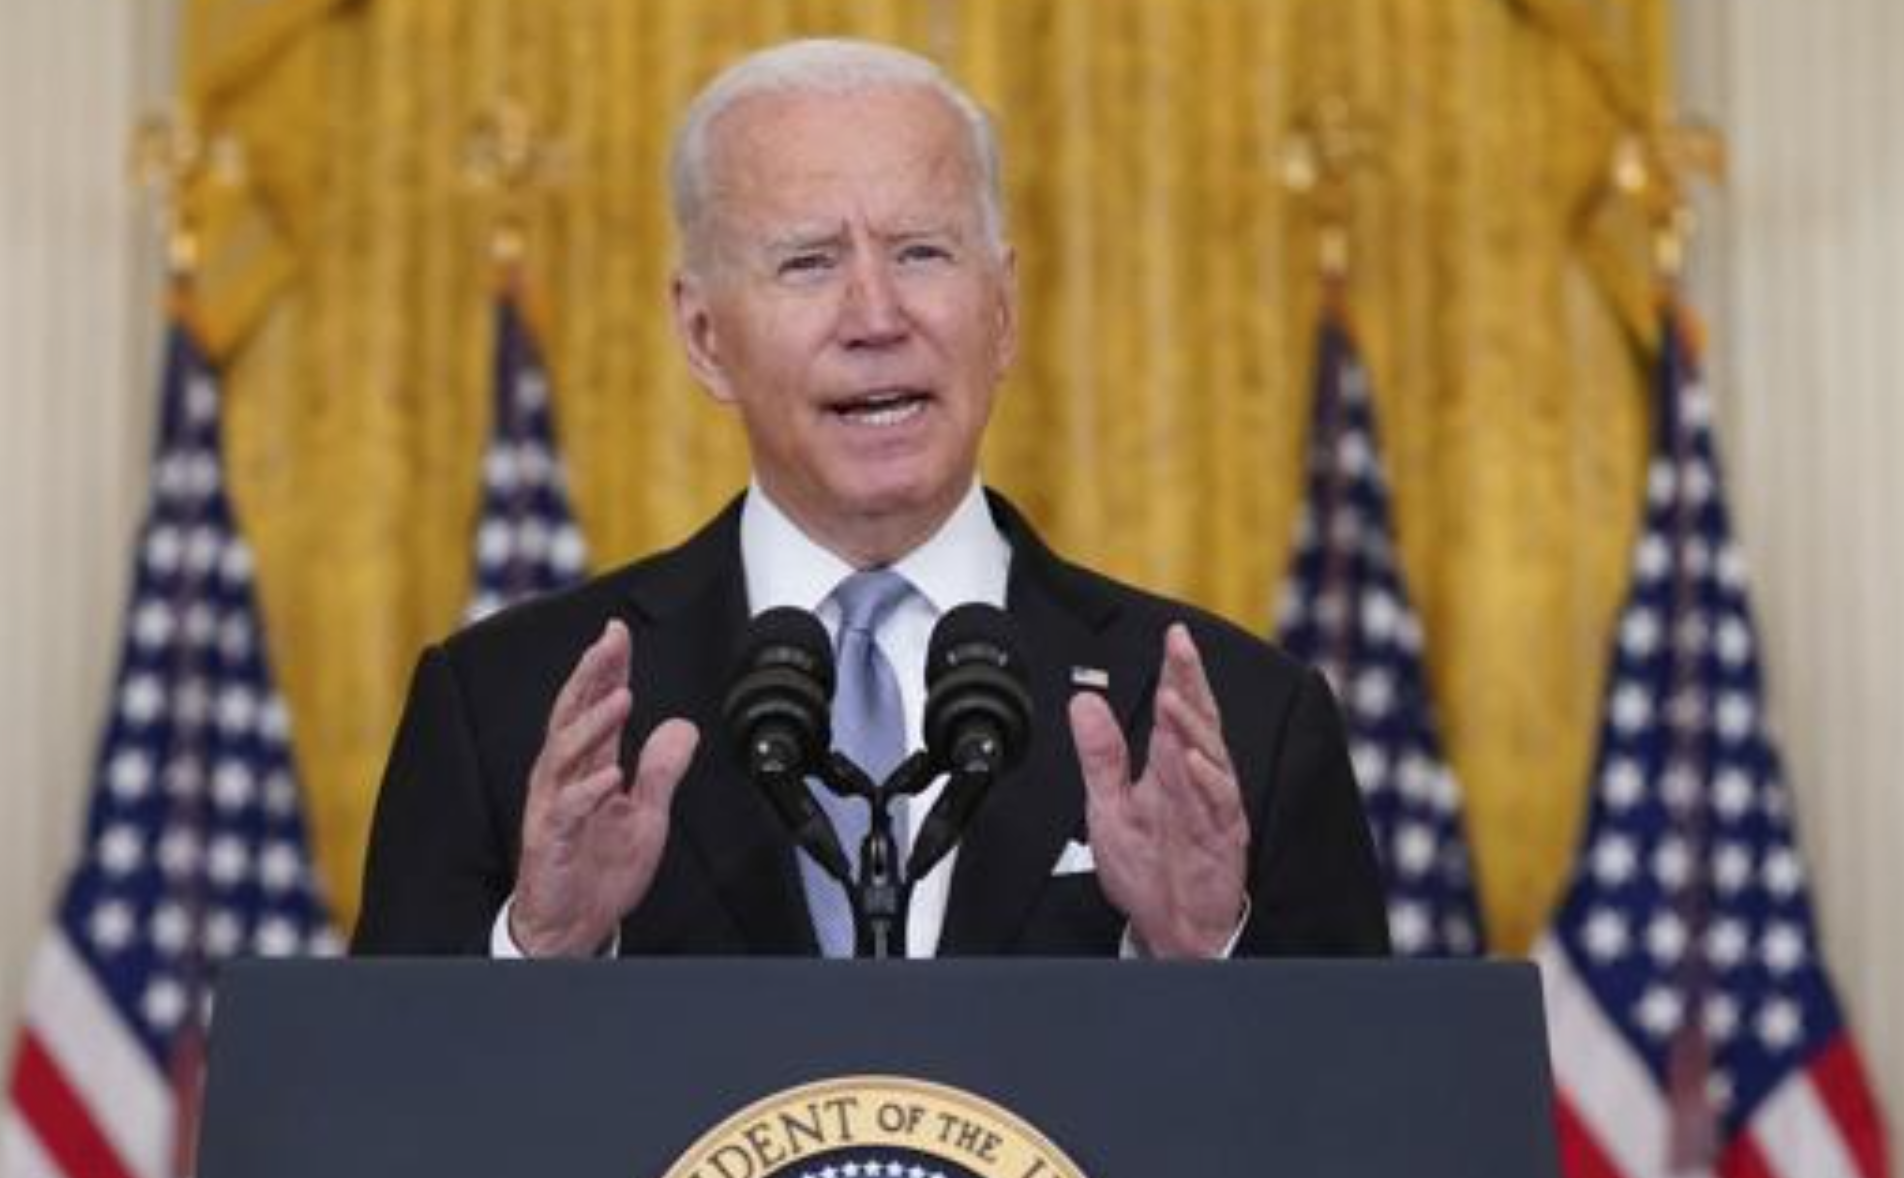 Afghanistan in mano ai talebani, il discorso di Biden: "Gli americani non devono morire"